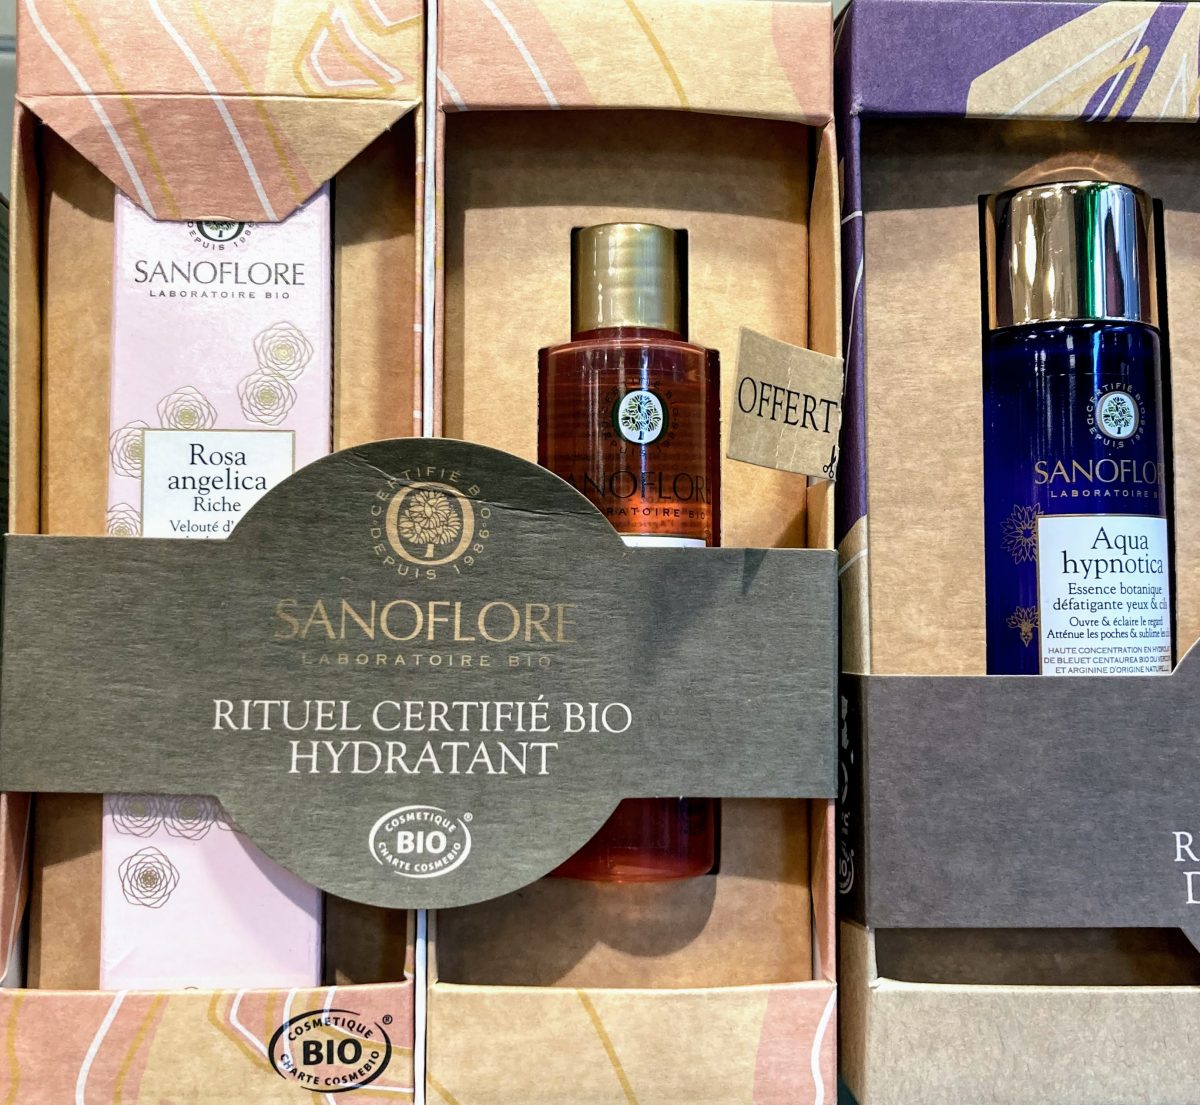 Laboratorio Sanoflore extrae sus riquezas de la naturaleza para conseguir una piel más bonita y sana, y propone productos con perfumes 100% naturales, sin parabenos, sin colorantes